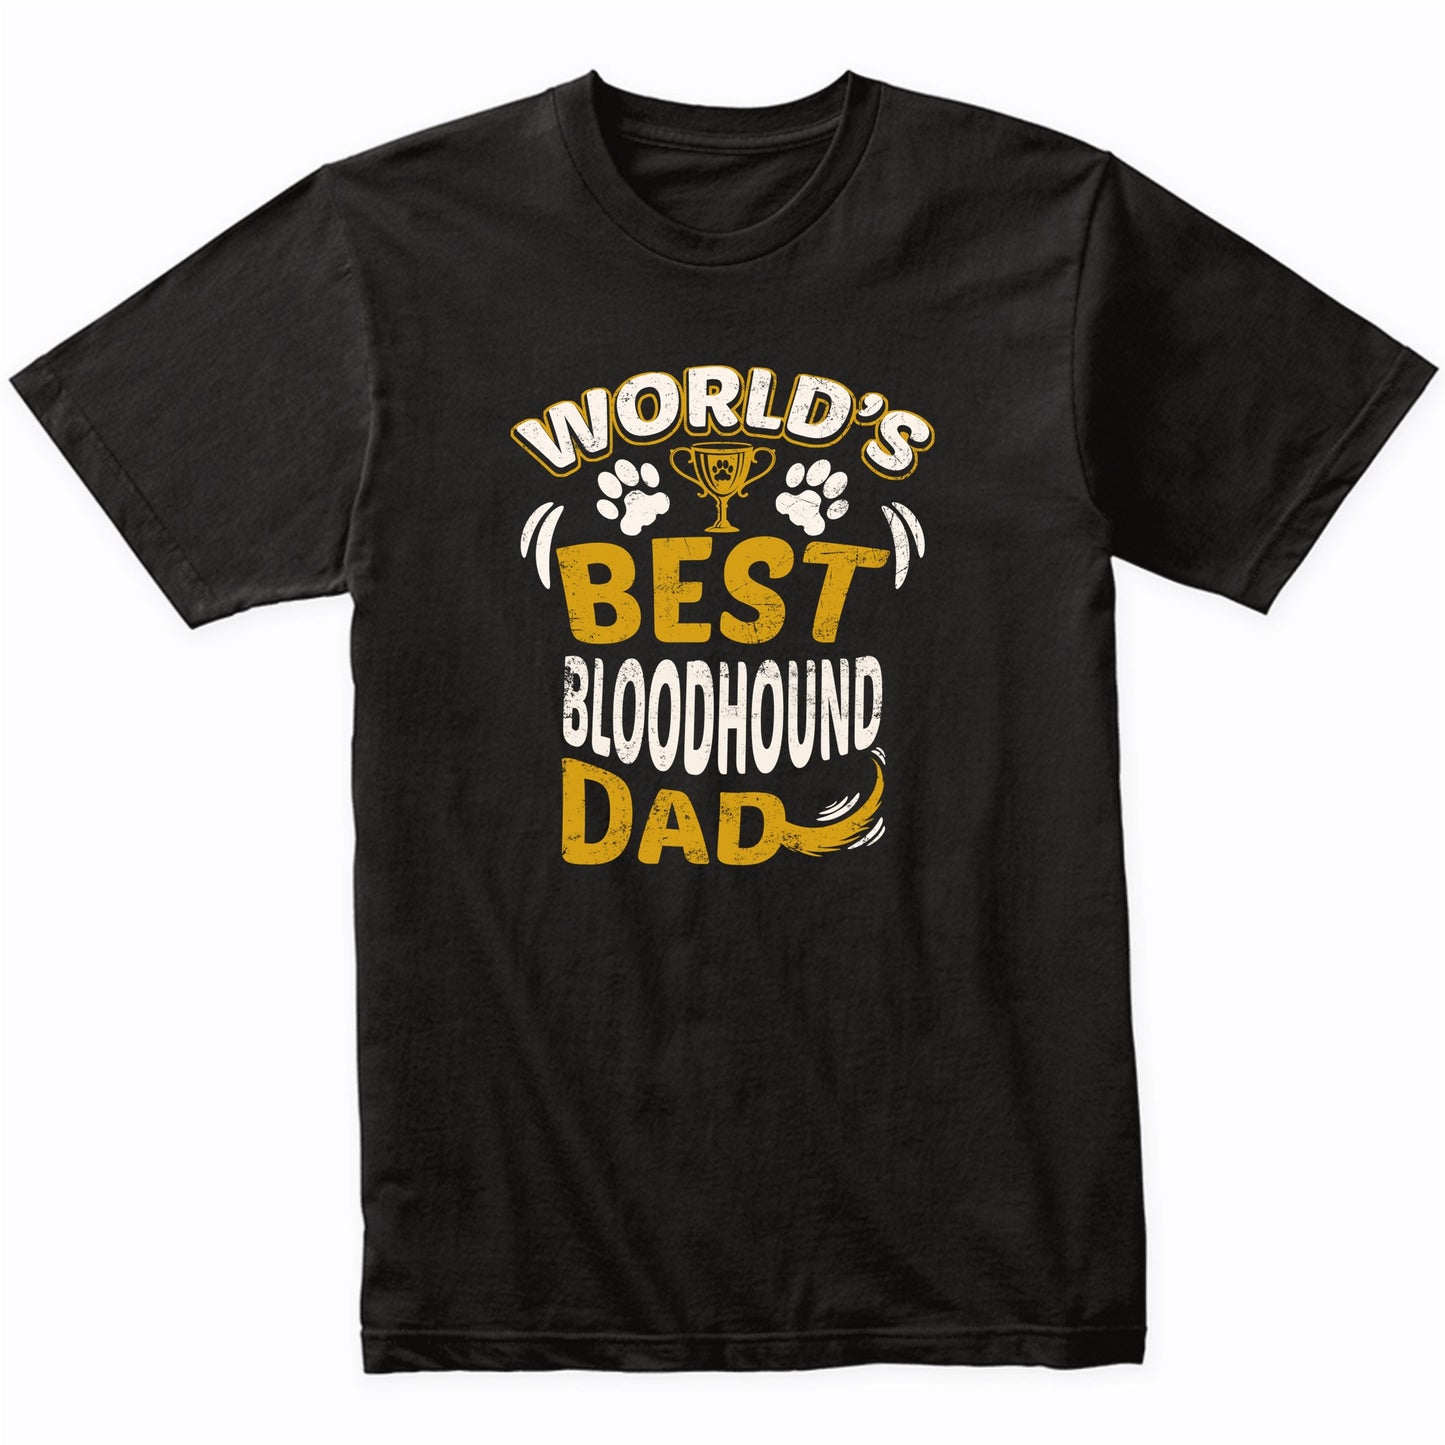 World's Best Bloodhound Dad Graphic T-Shirt